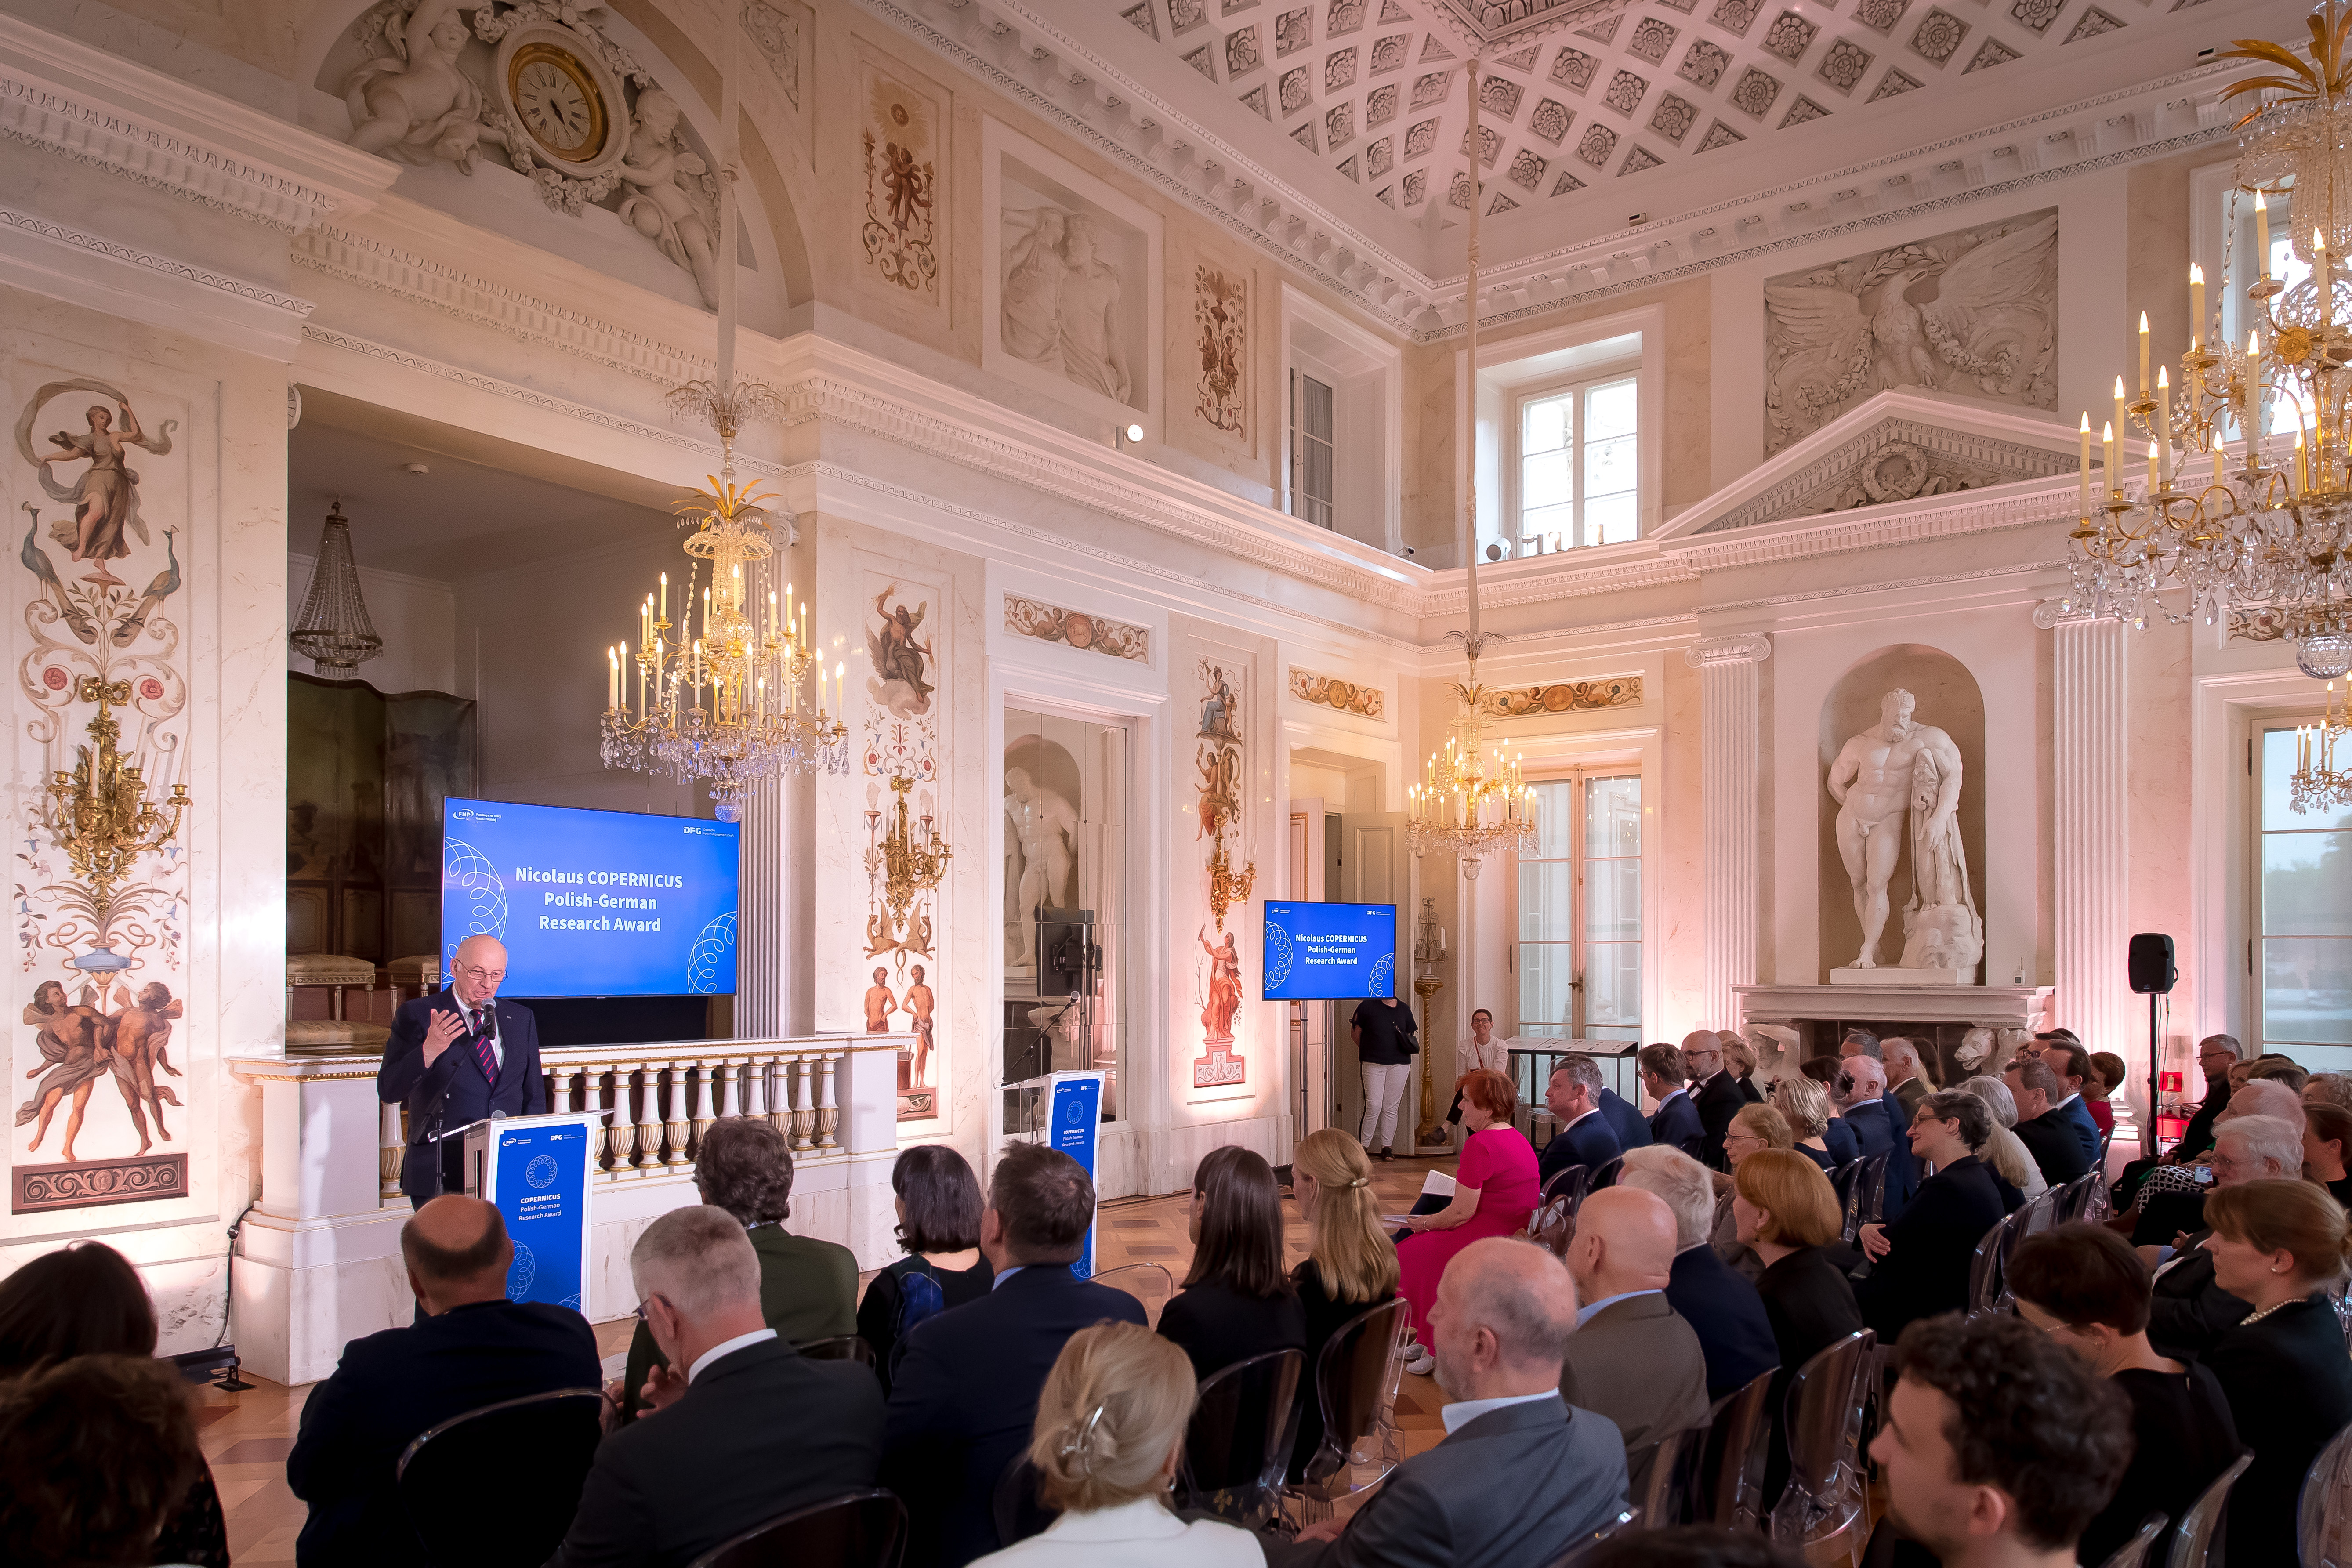 Begrüßungsworte des FNP-Präsidenten Żylicz im Łazienki-Palast in Warschau